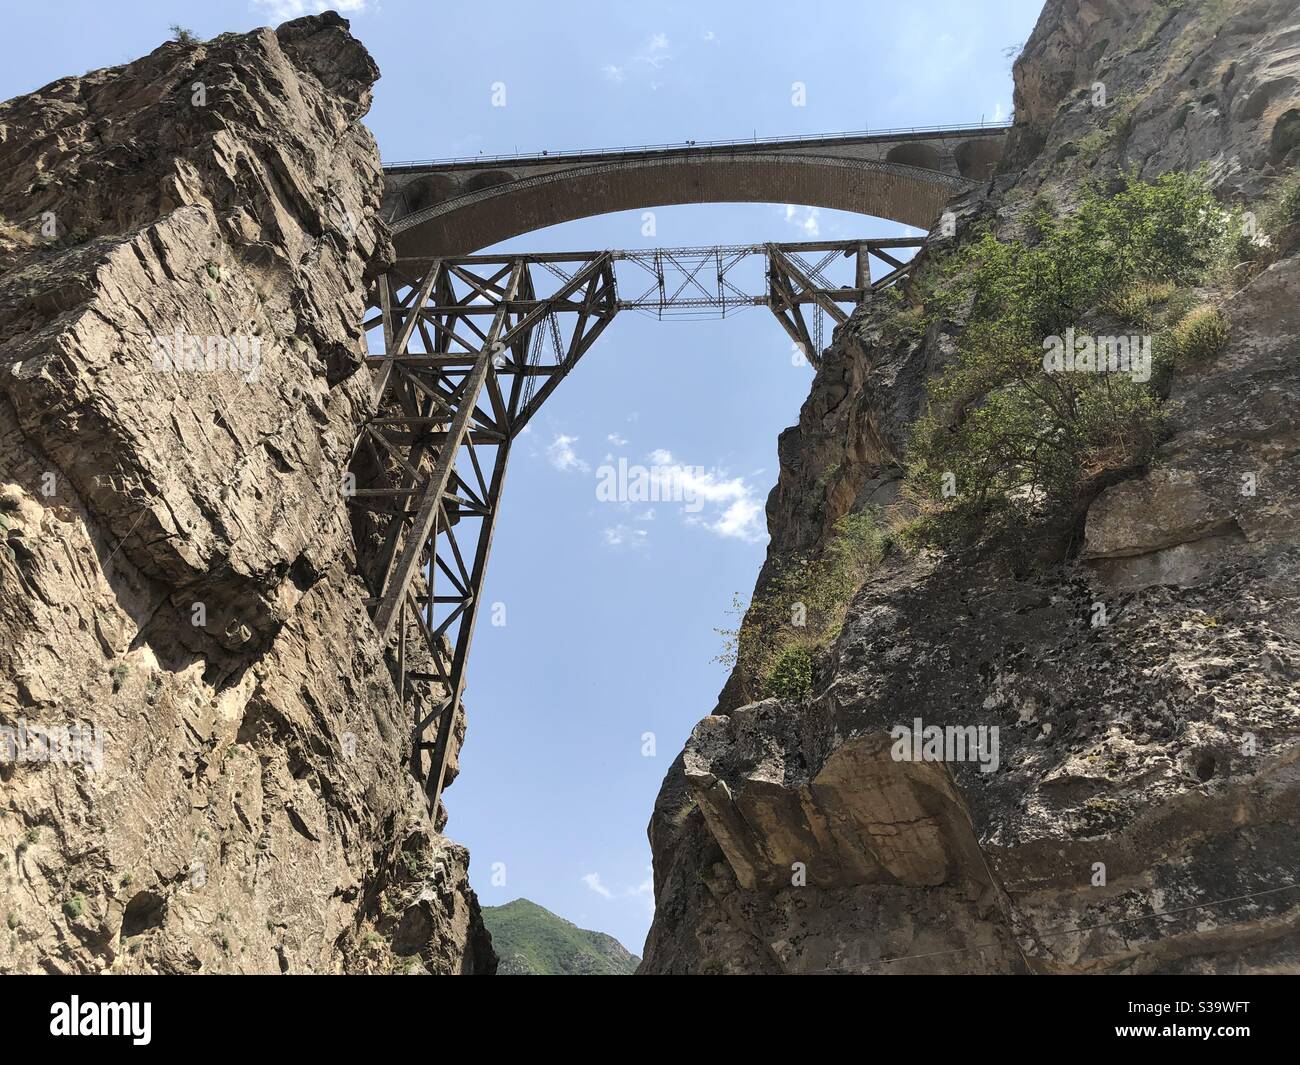 Il ponte di Weresk, costruito dagli ingegneri tedeschi alla seconda guerra mondiale, in quel periodo il re dell'Iran lasciò il principale ingegnere sotto il ponte quando il primo treno stava per passare per assicurarsi che il ponte sia sicuro. Foto Stock